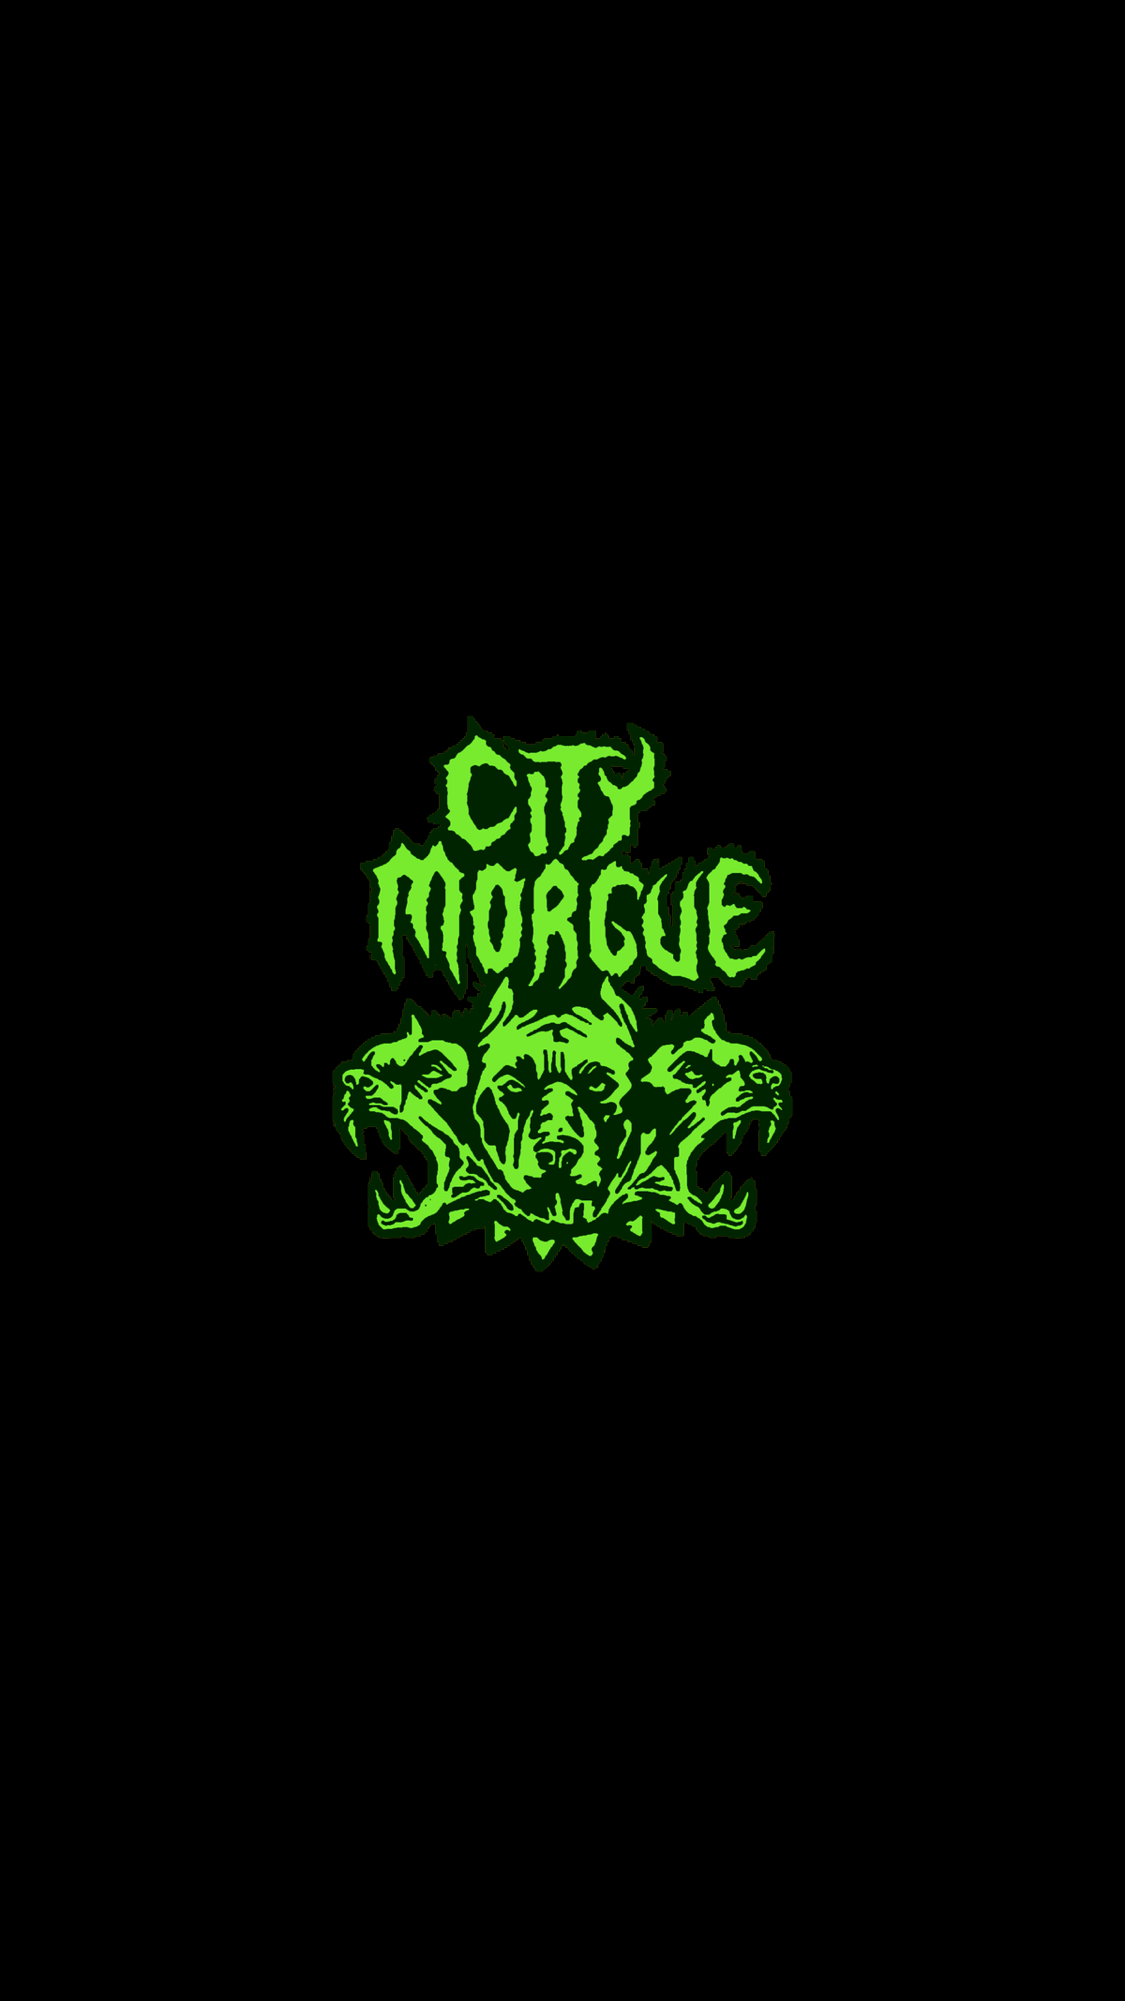 City Morgue iPhone Wallpapers - Wallpaper Cave